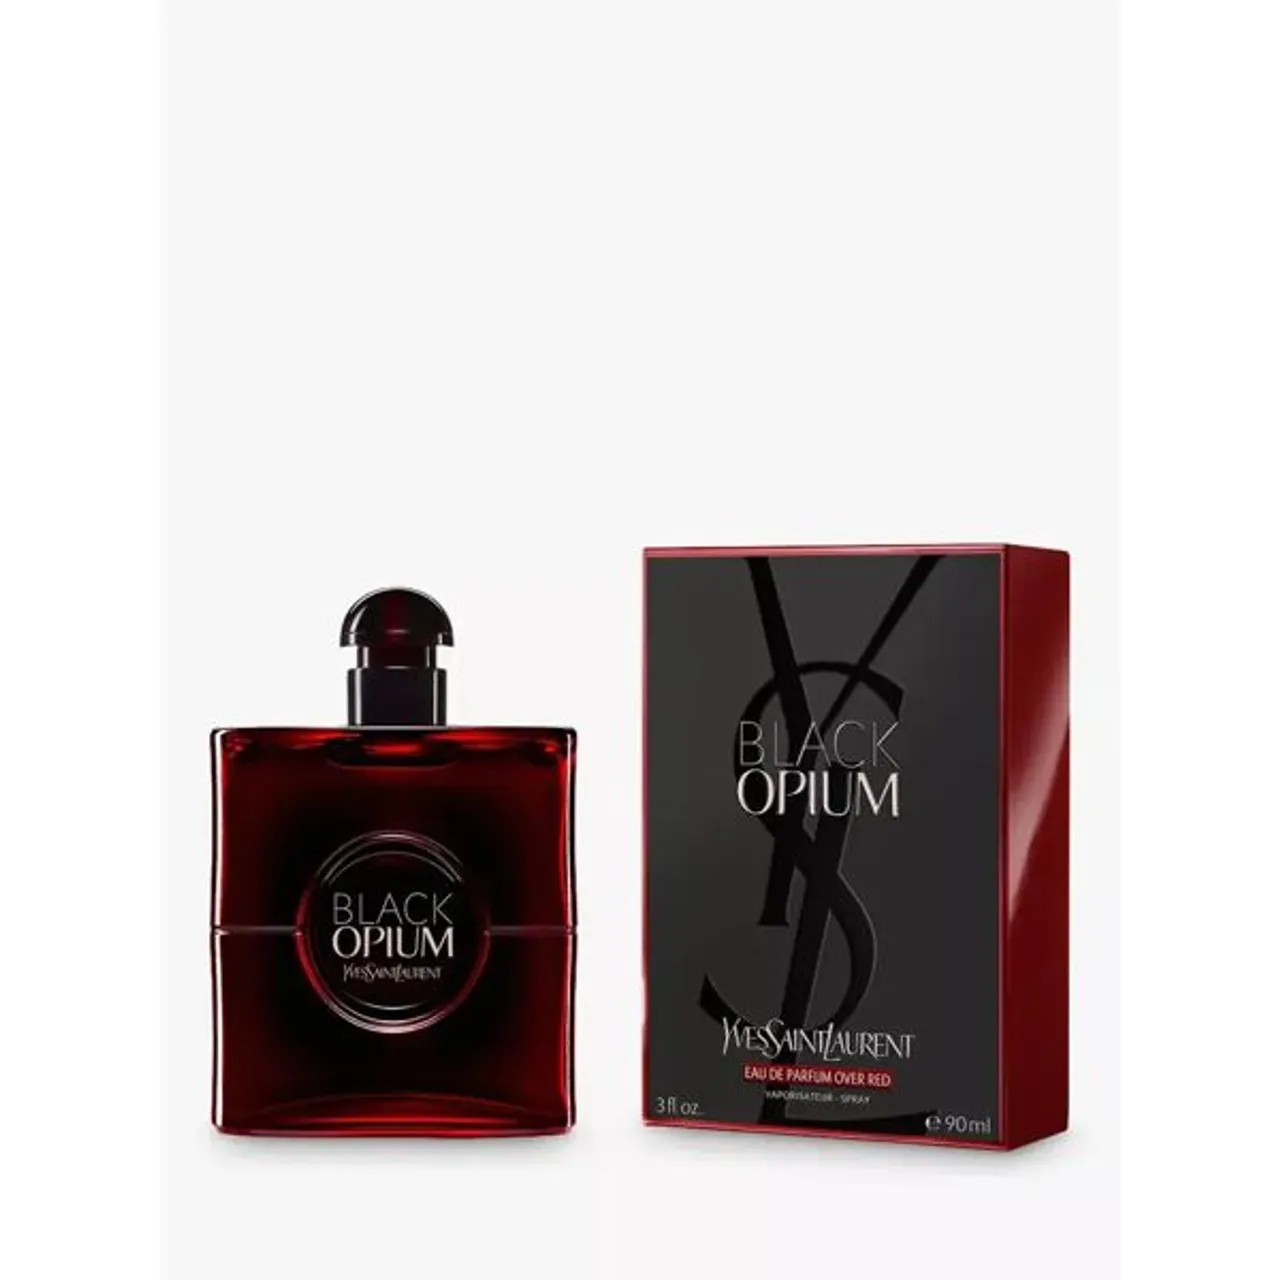 Yves Saint Laurent Black Opium Eau de Parfum Over Red - Female - Size: 90ml